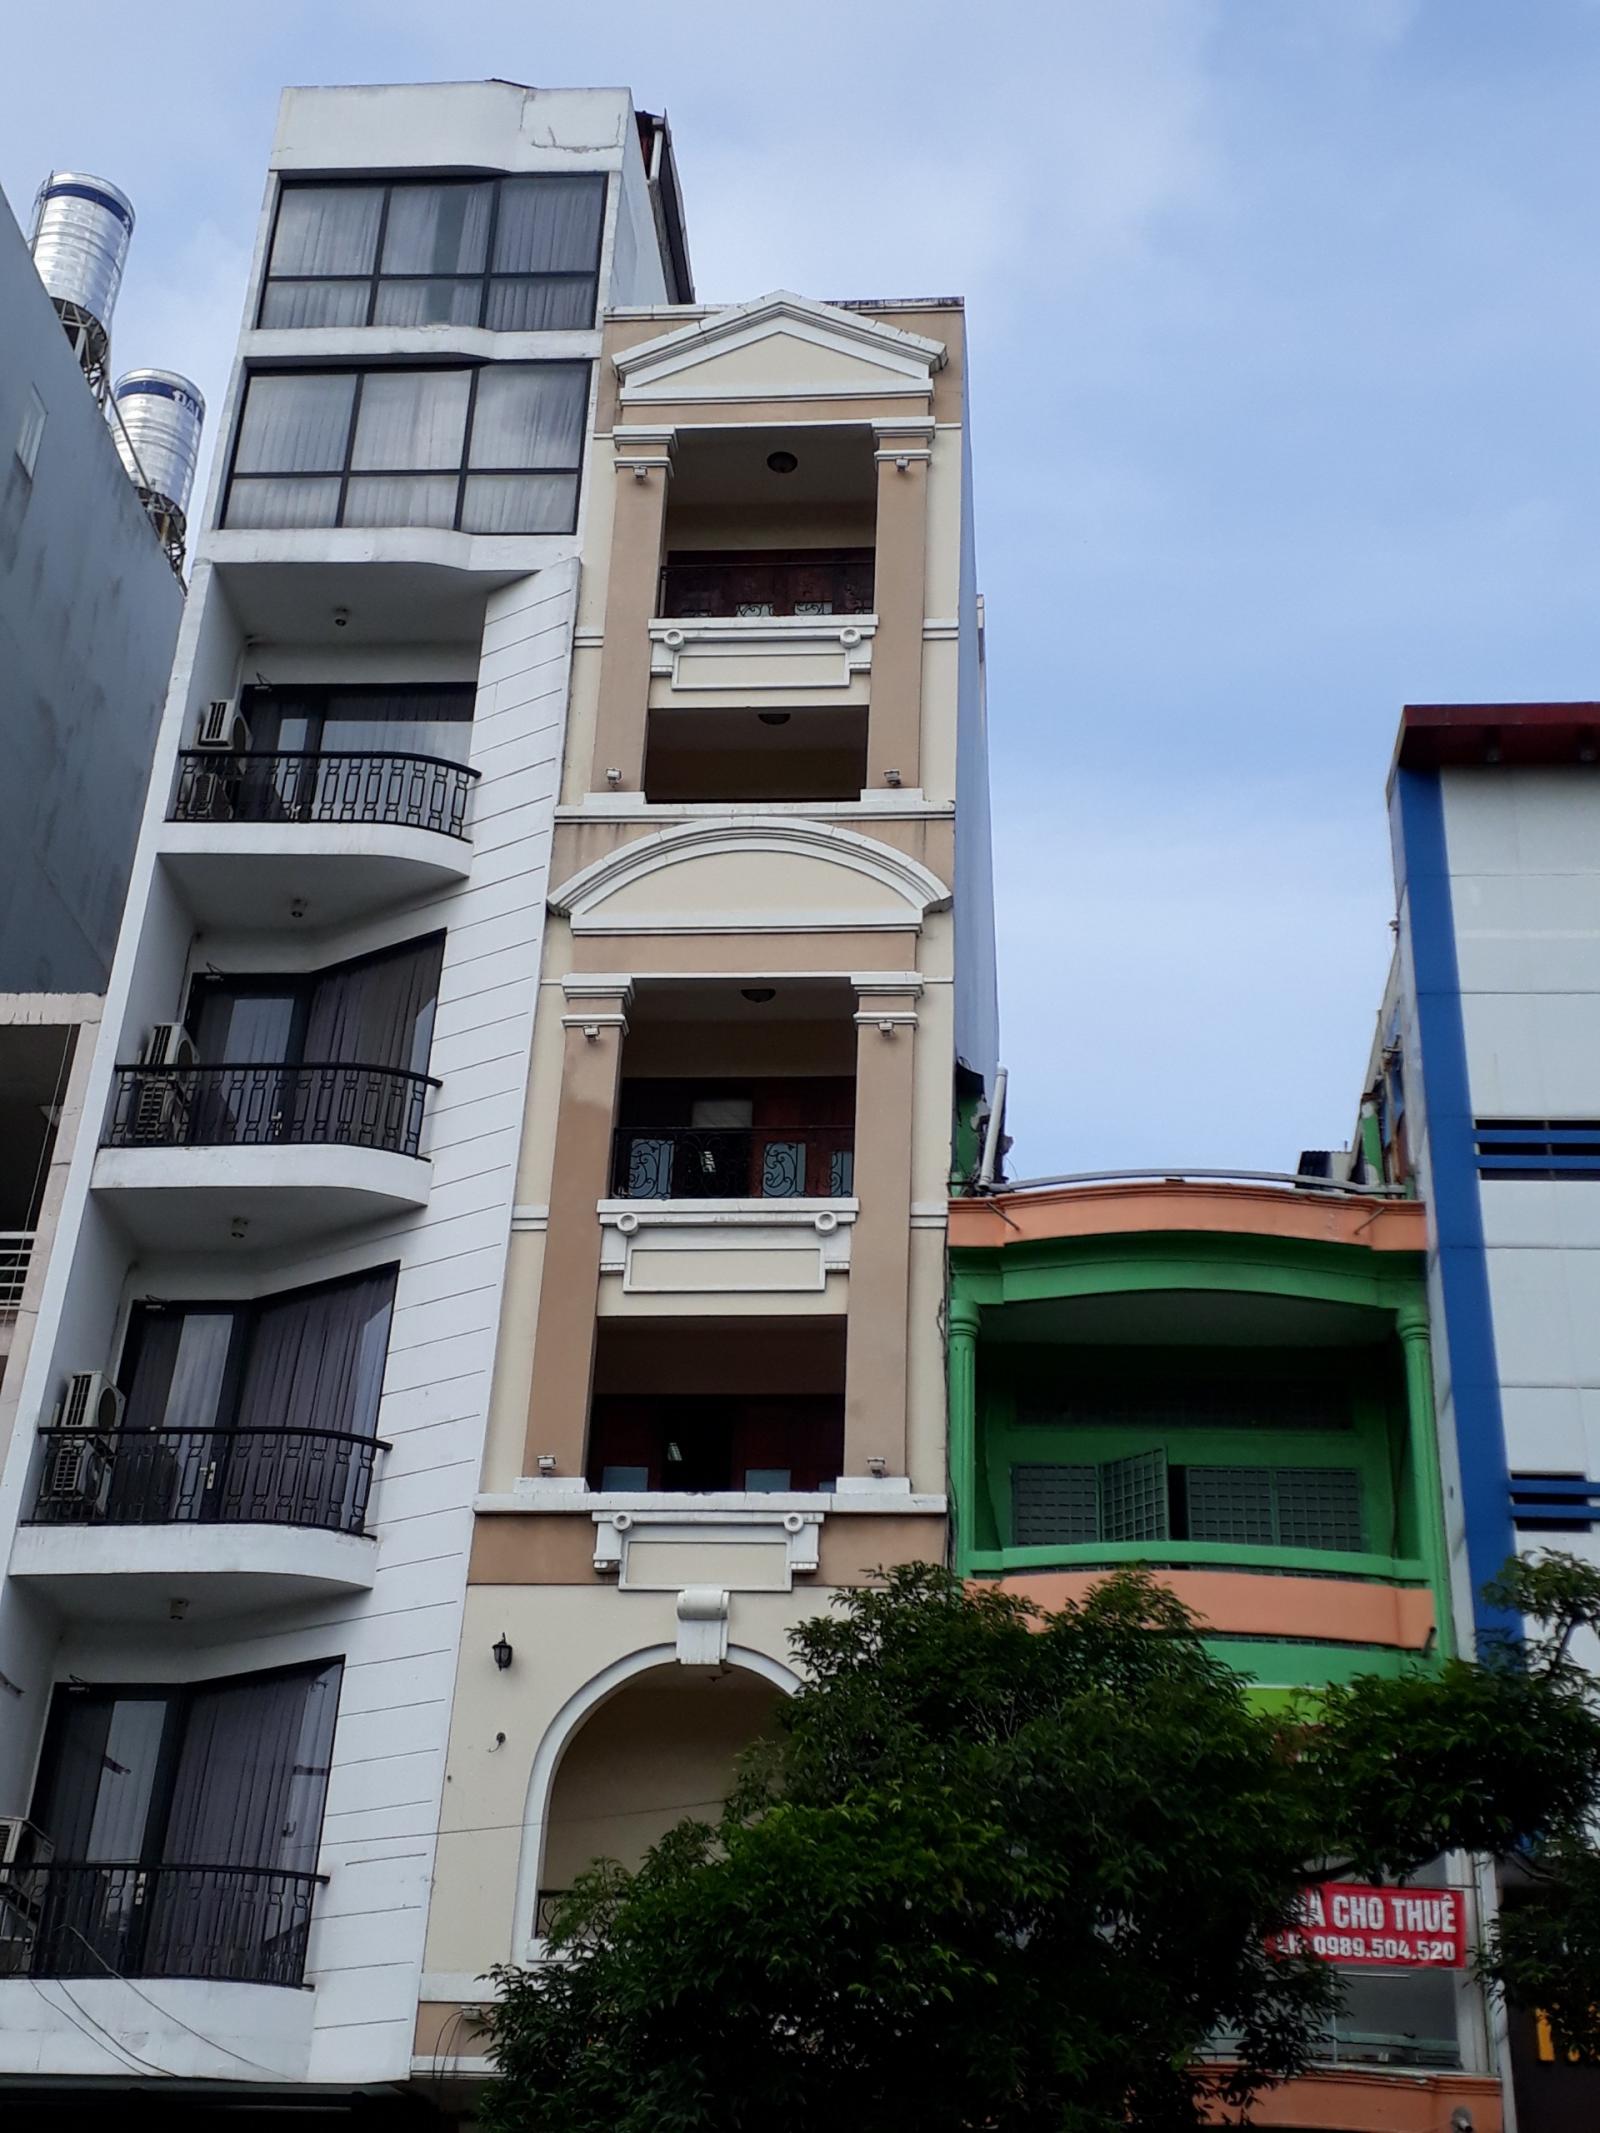 Cần gấp tòa nhà mặt tiền đường Lê Hồng Phong, P. 4, Q. 5, hầm 8 lầu sân thượng.